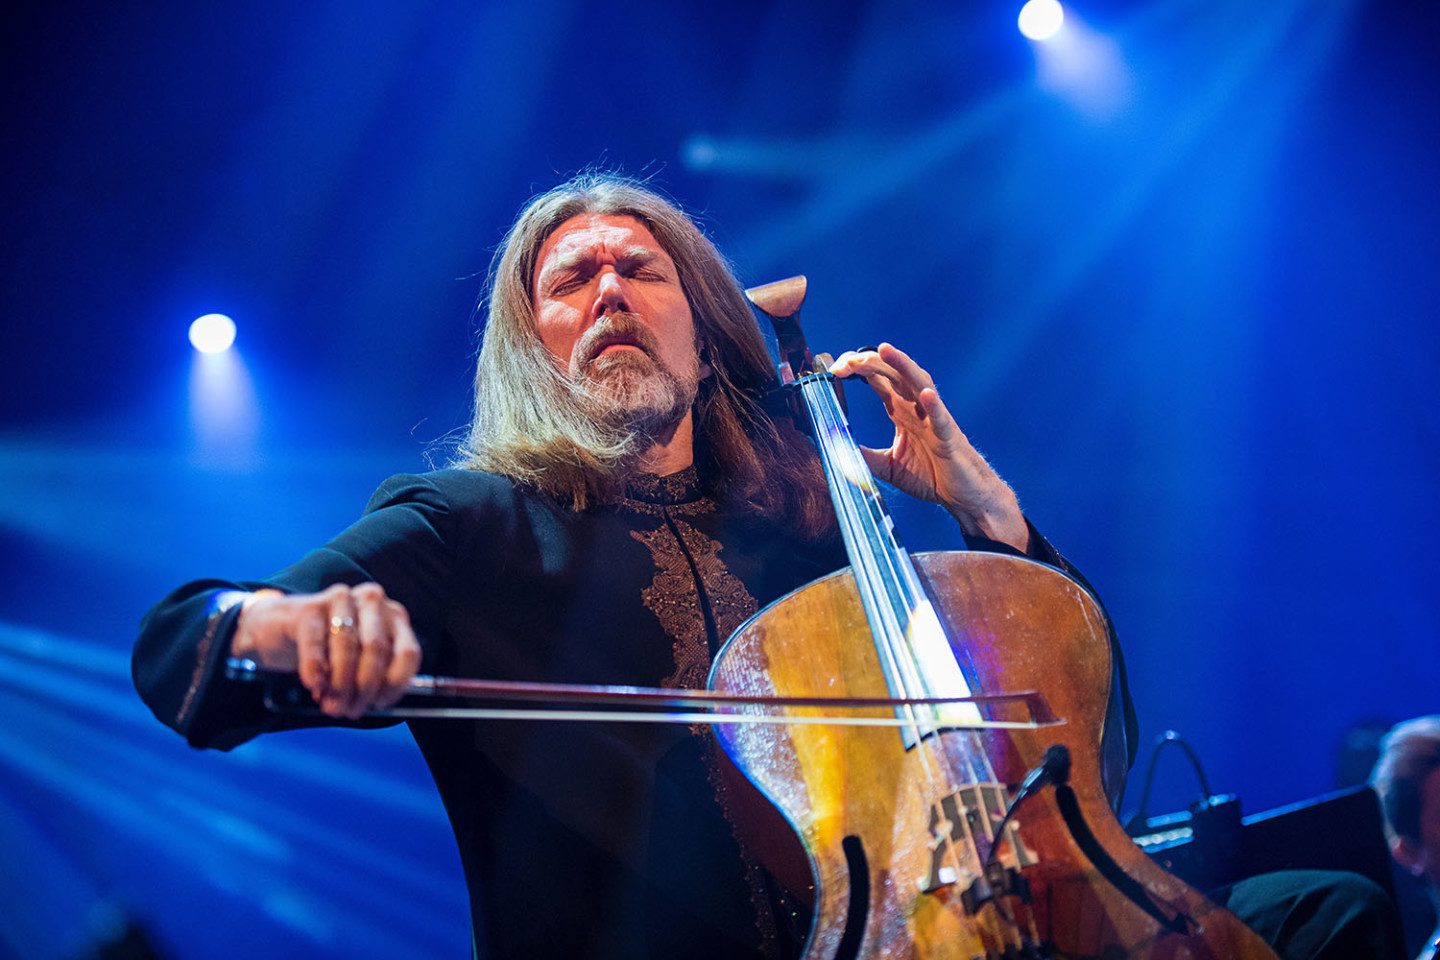  Musikern Svante Henryson spelar cello under en konsert, blå bakgrund